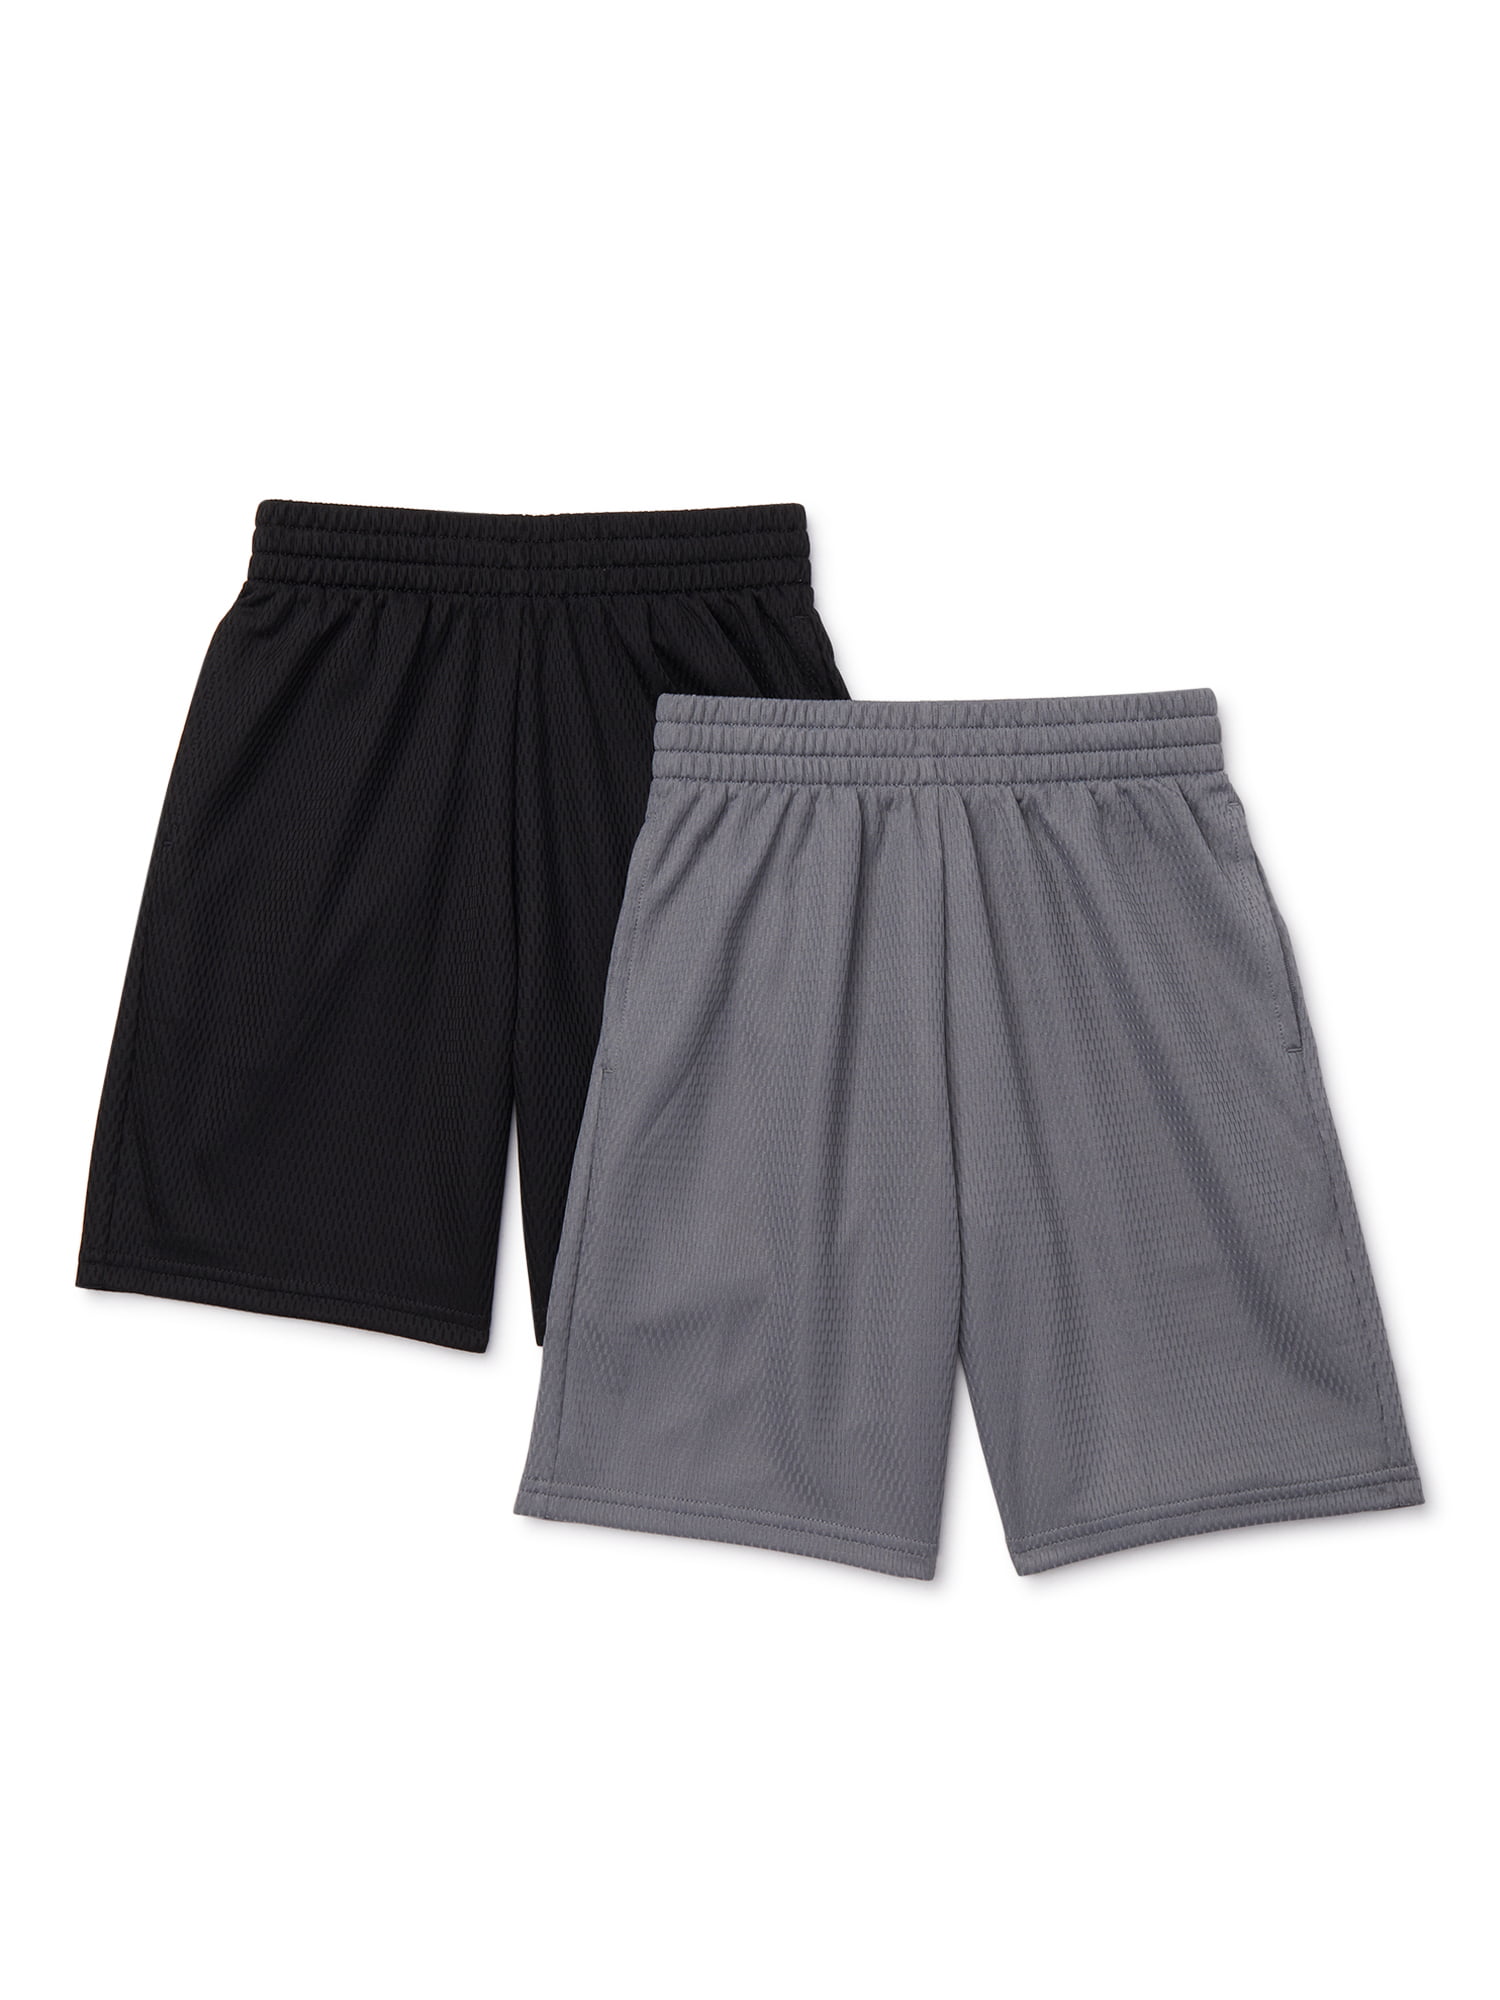 NEW Boys Athletic Works Orange & Gray Dazzle Shorts Size XS 4-5 